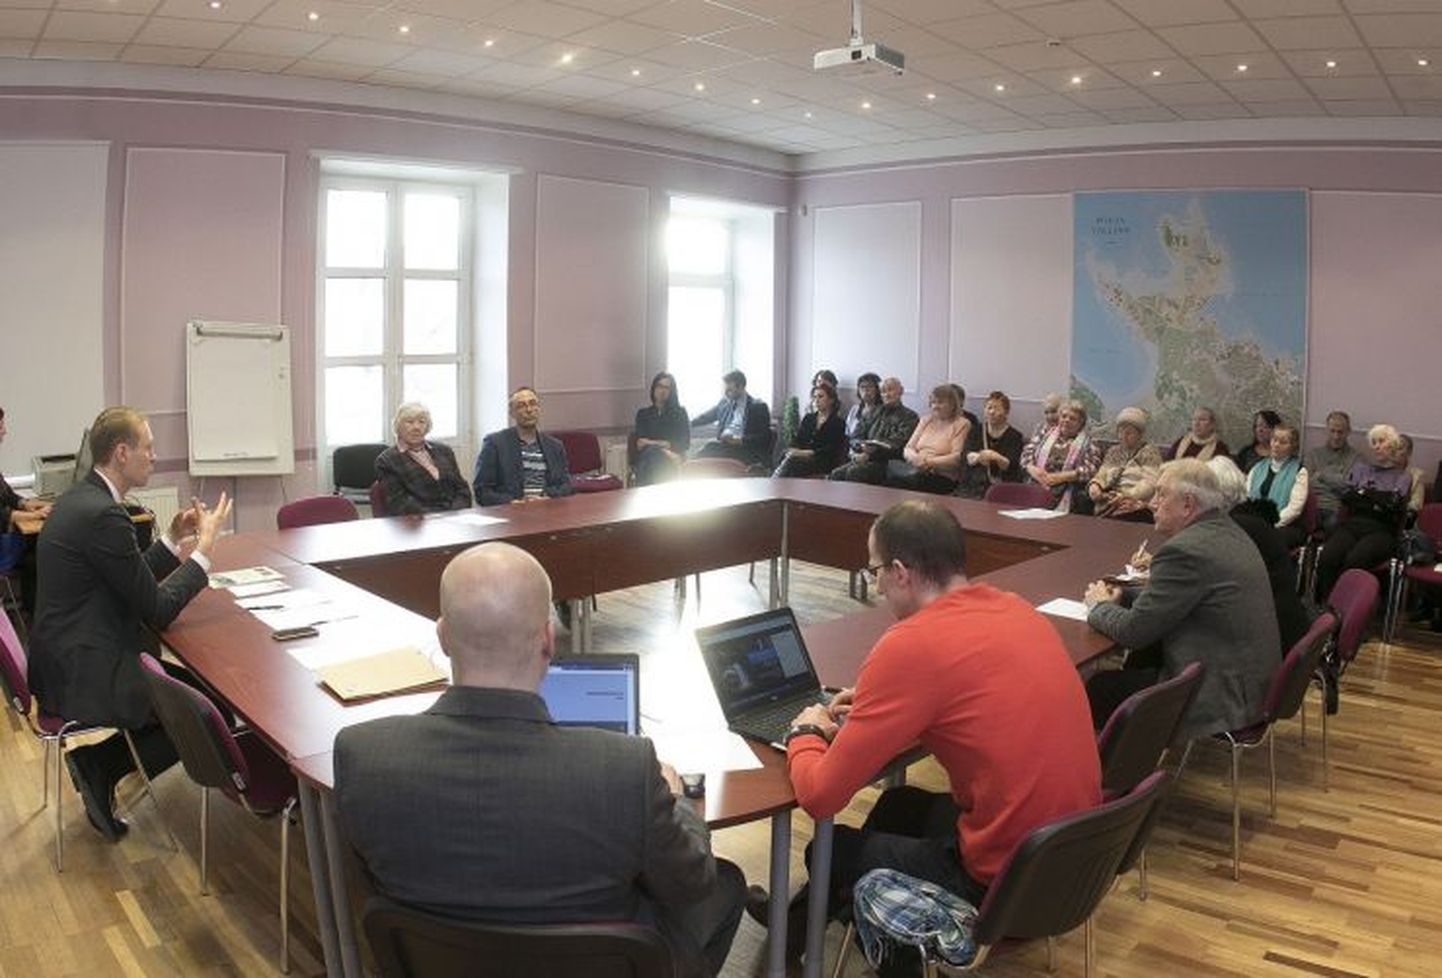 Põhja-Tallinna eakate nõukogu koosolekud toimuvad edaspidi mitte harvem kui kord kvartalis. Igale koosolekule kutsutakse lisaks nõukogu liikmetele juhuvaliku alusel inimesi Põhja-Tallinnas elavate eakate seast.